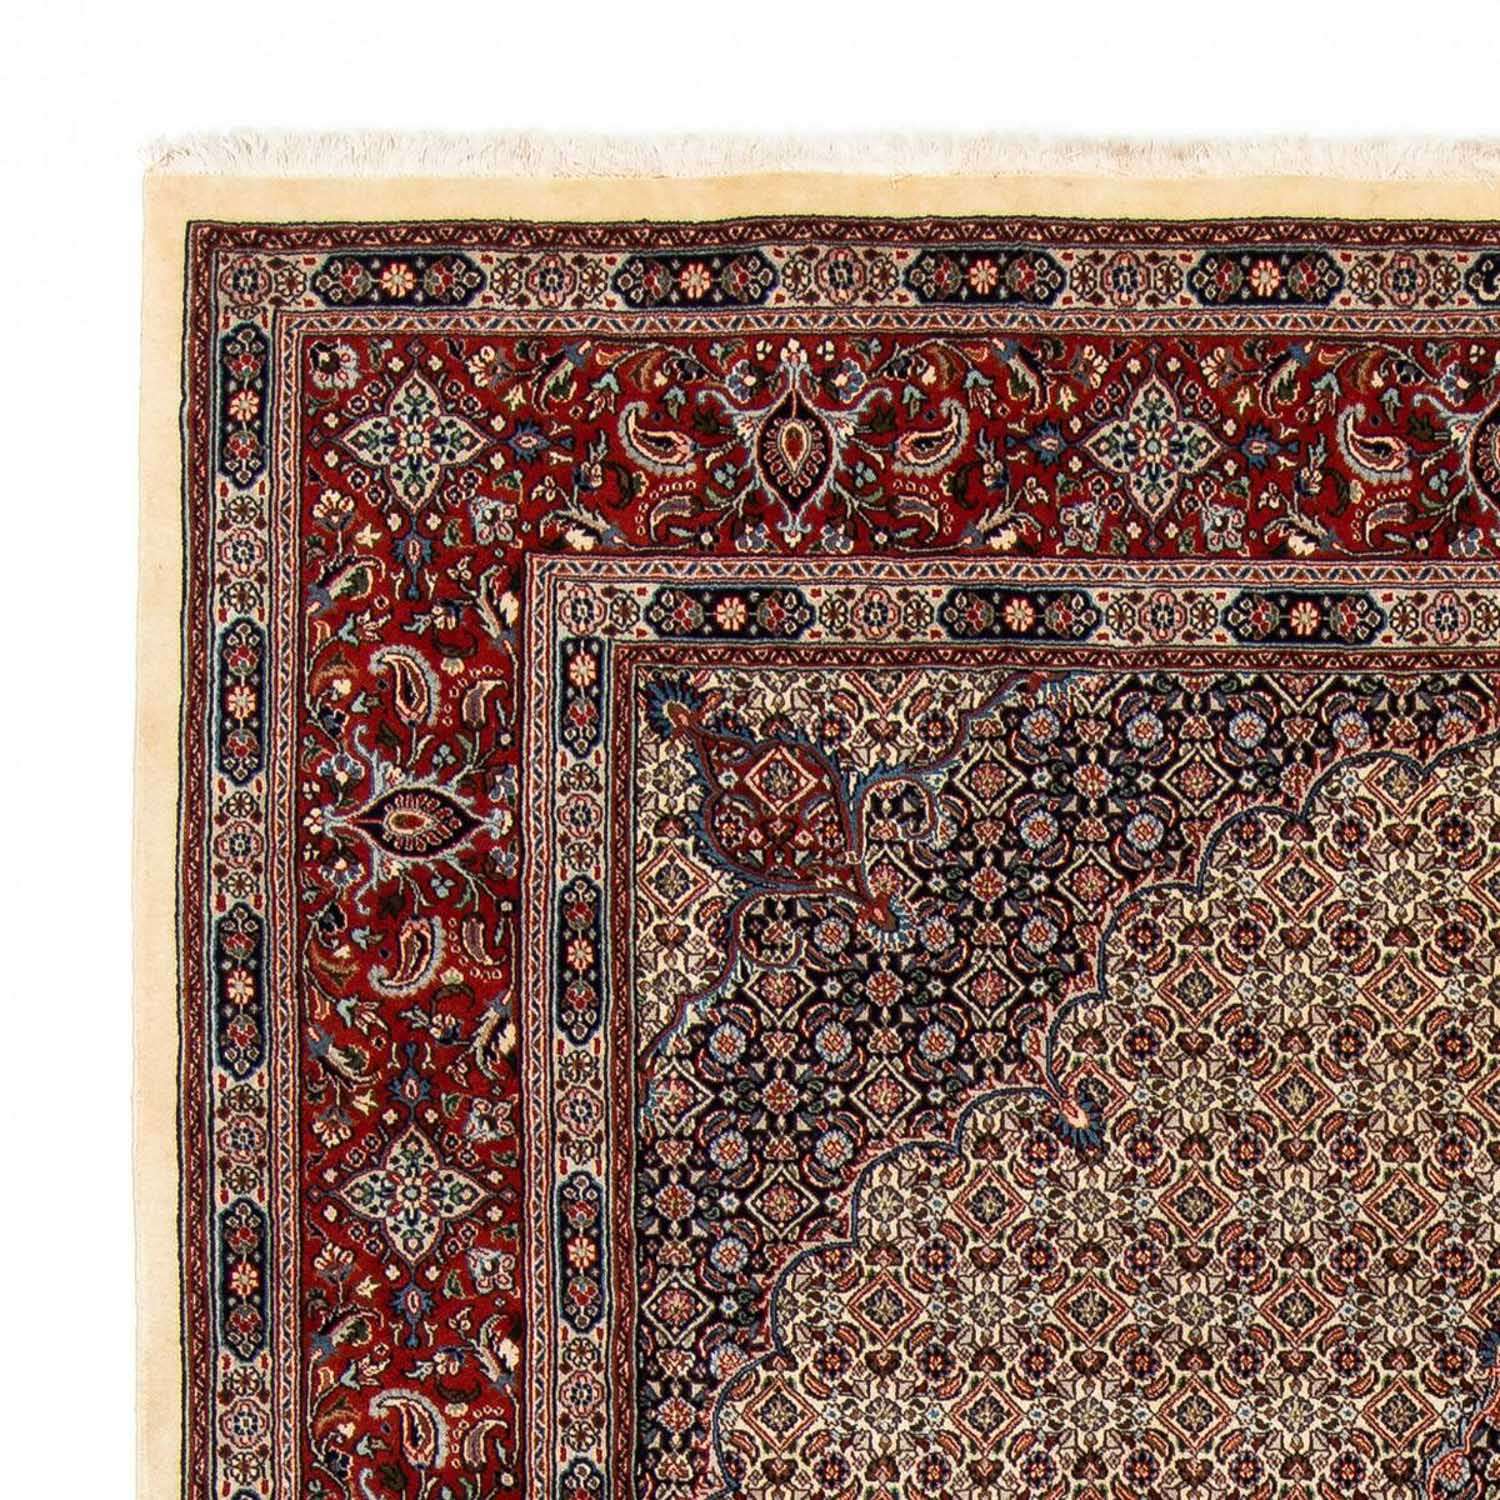 Perzisch tapijt - Klassiek - 294 x 204 cm - beige